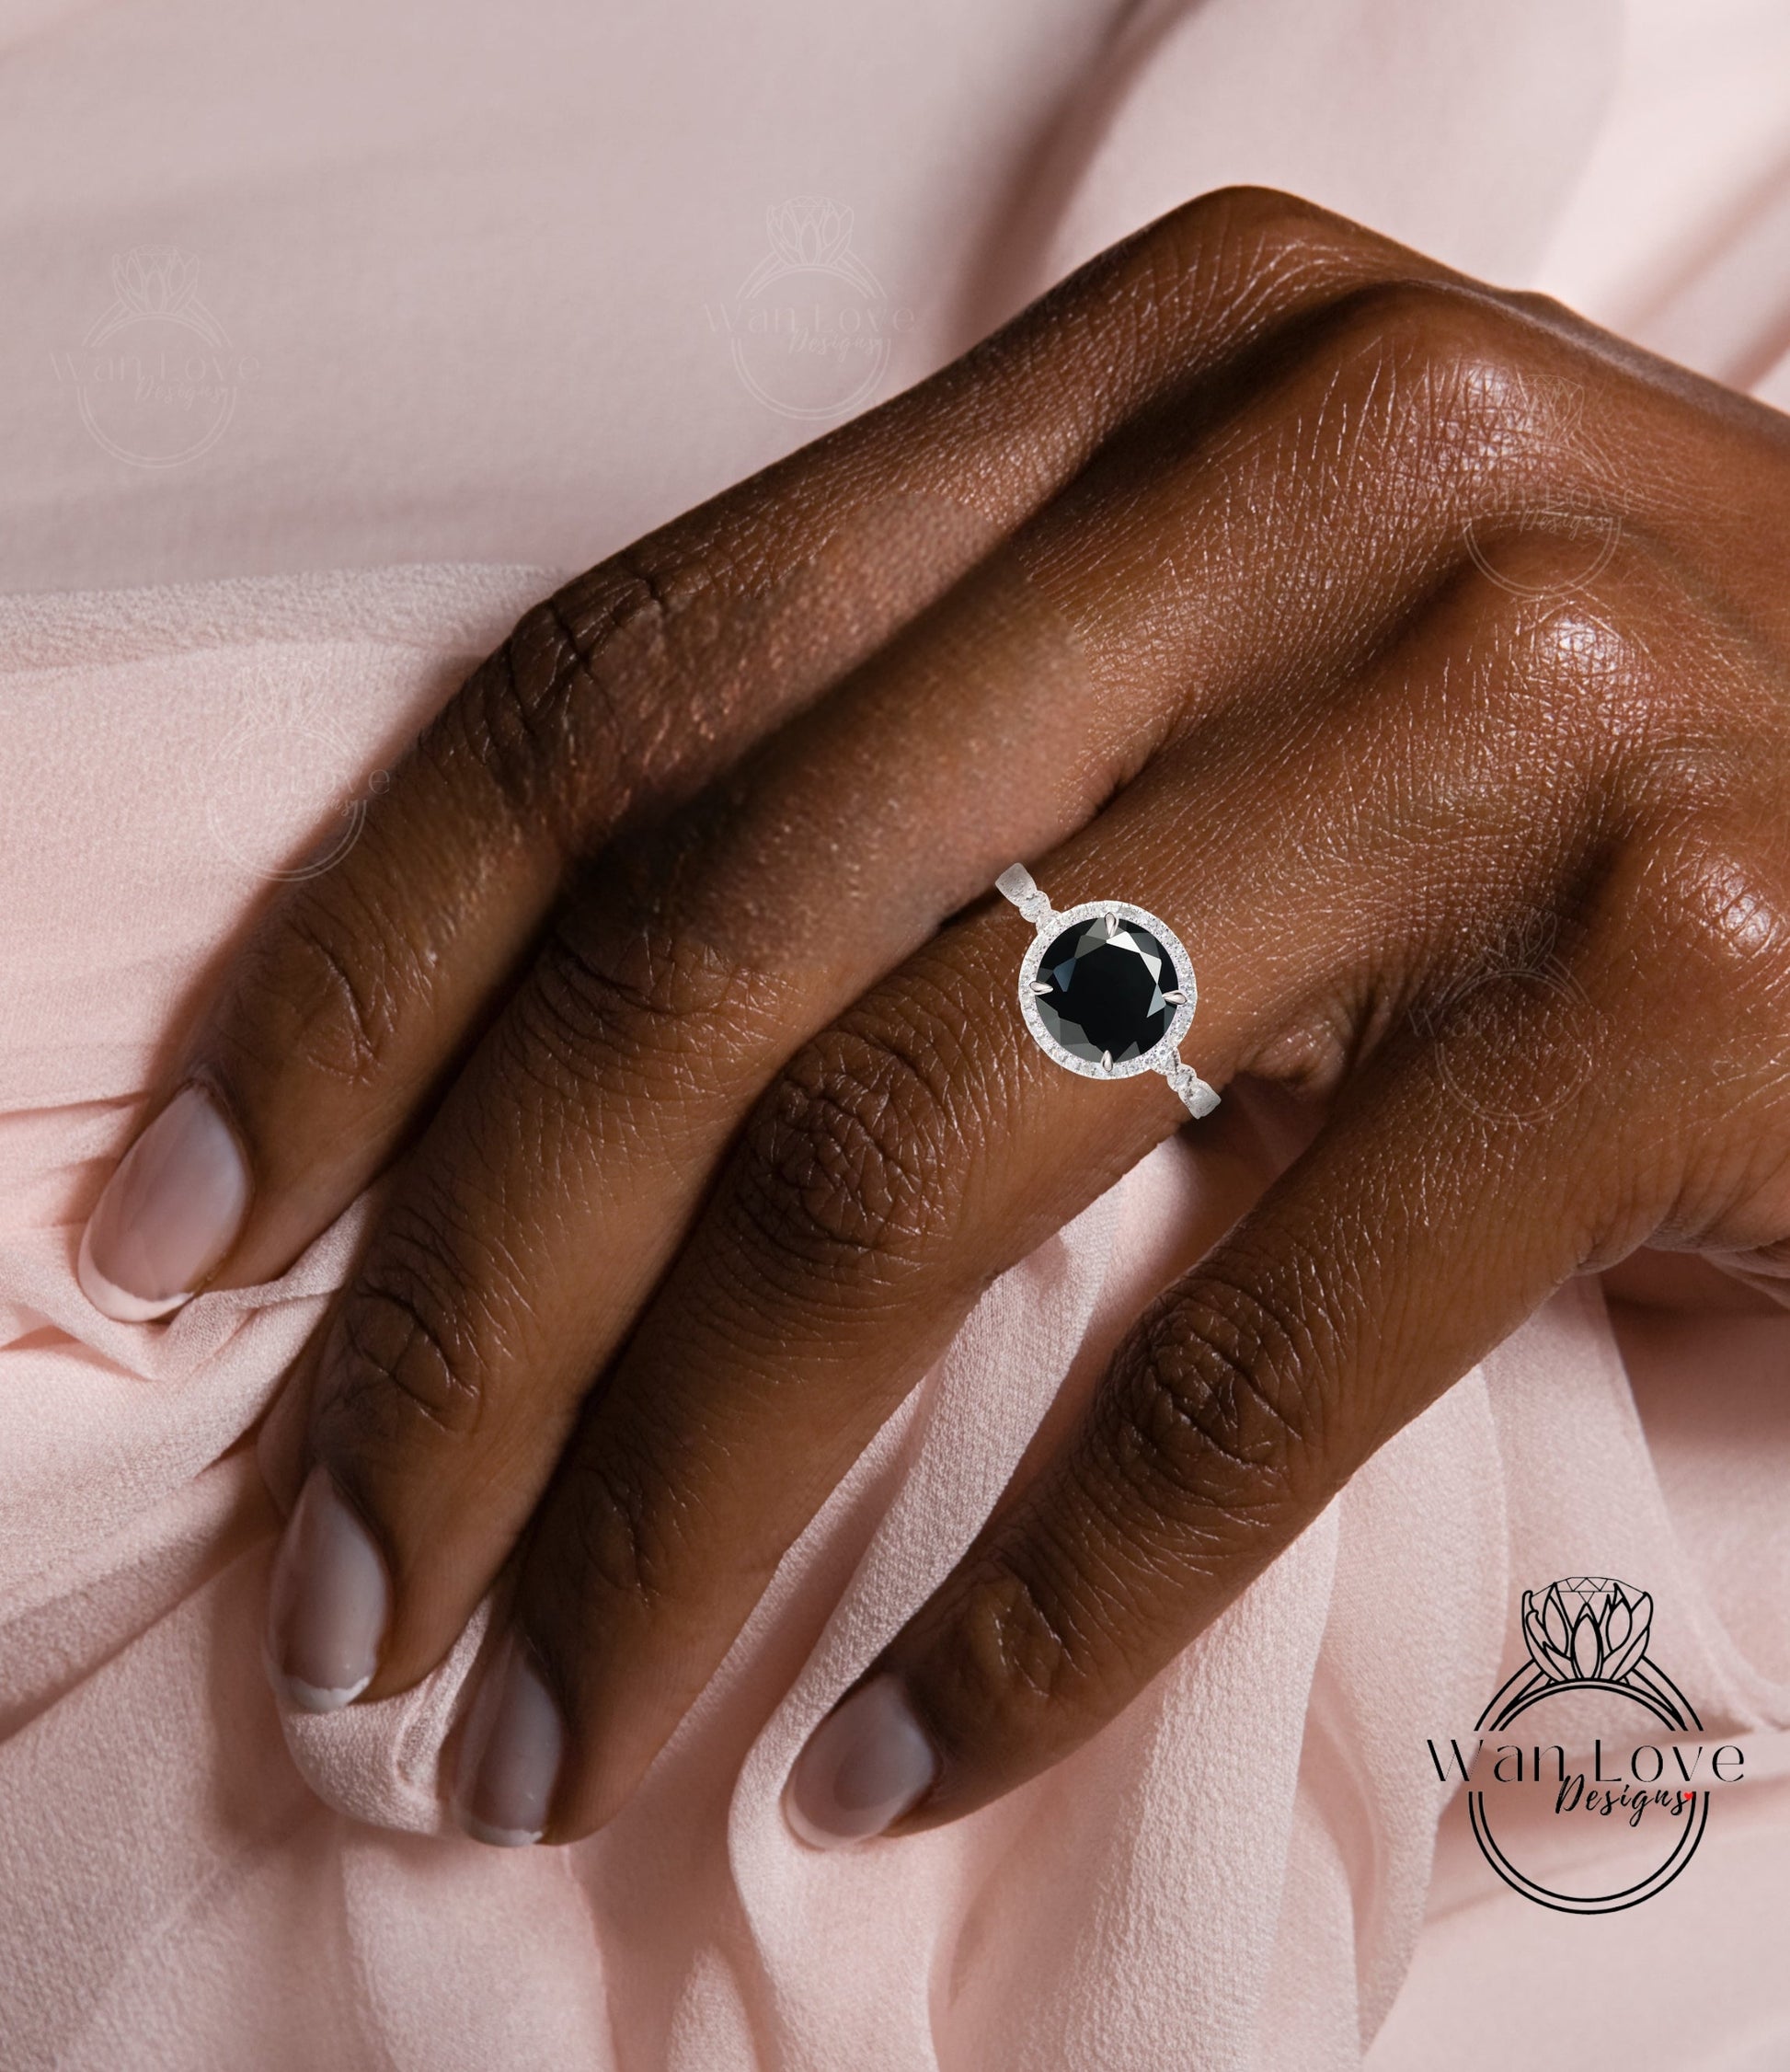 Round Halo Black Moissanite Engagement Ring, Diamond/Moissanite Halo Wedding Ring, Scalloped Leaf Diamond Milgrain Shank Band Custom Ring, 14k/18k Gold Wan Love Designs